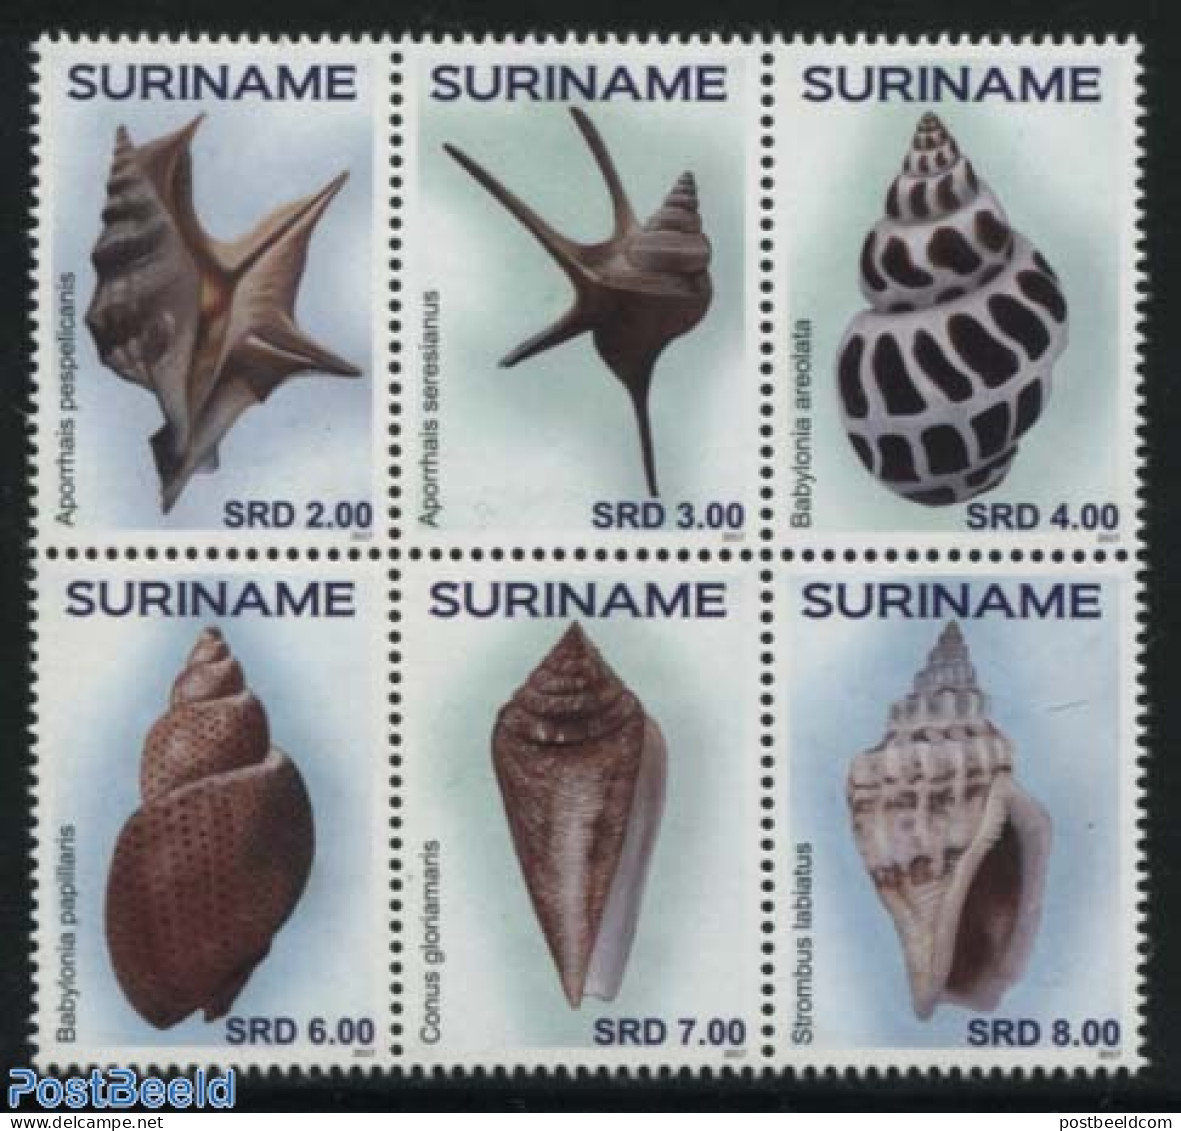 Suriname, Republic 2017 Shells 6v [++], Mint NH, Nature - Shells & Crustaceans - Marine Life